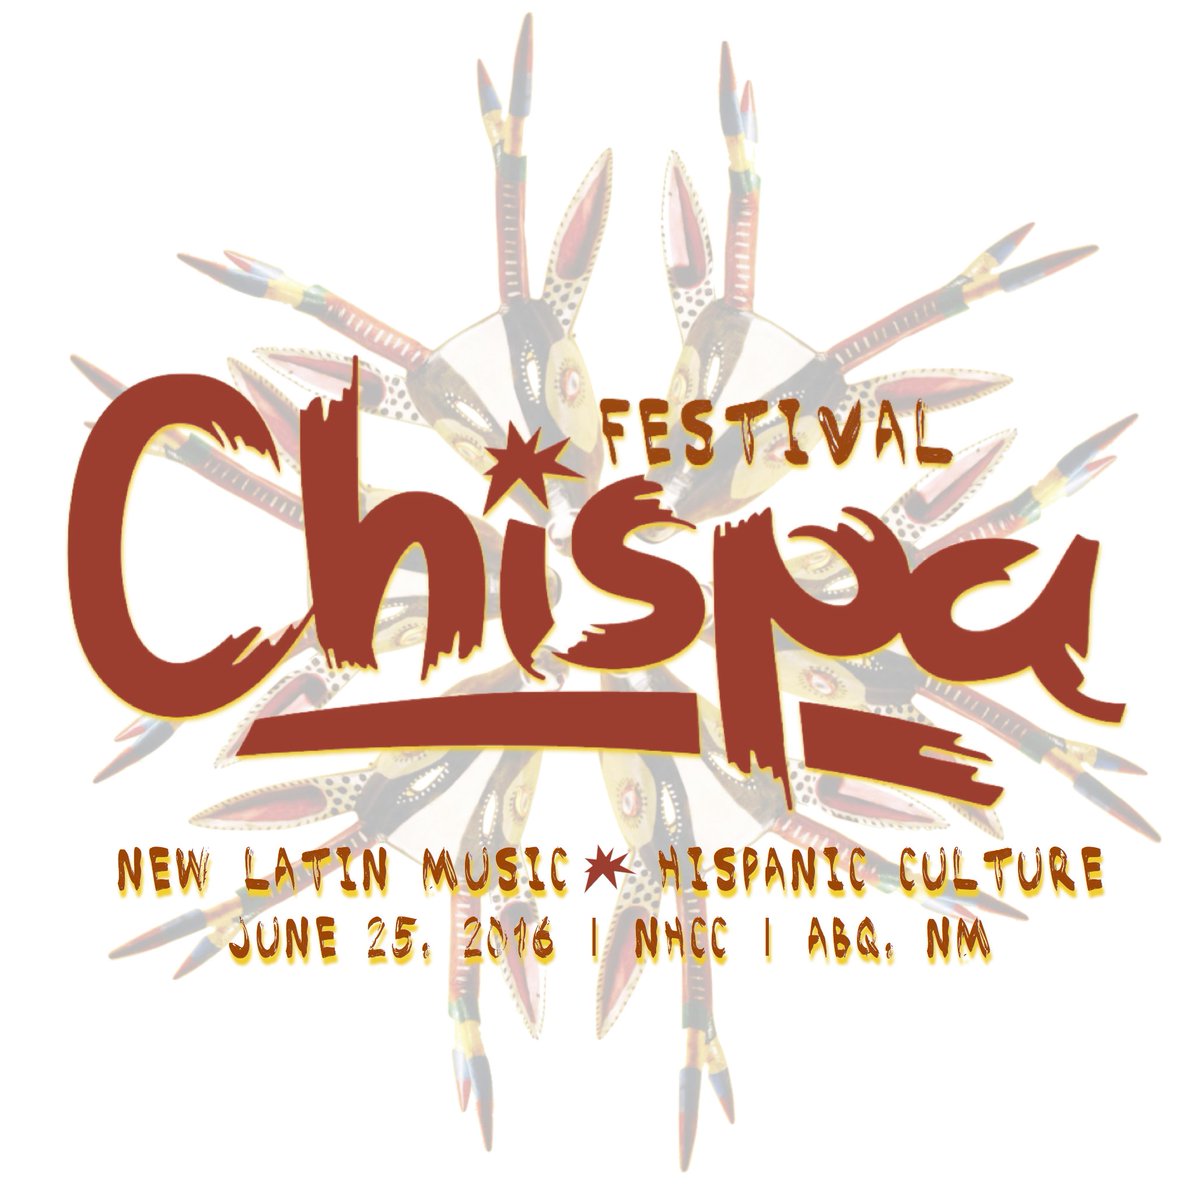 #FestivalChispa, baby Saturday 6/25  FestivalChispa.org
#NewLatinMusic #HispanicCulture @NHCCNM #AvokadoArtists